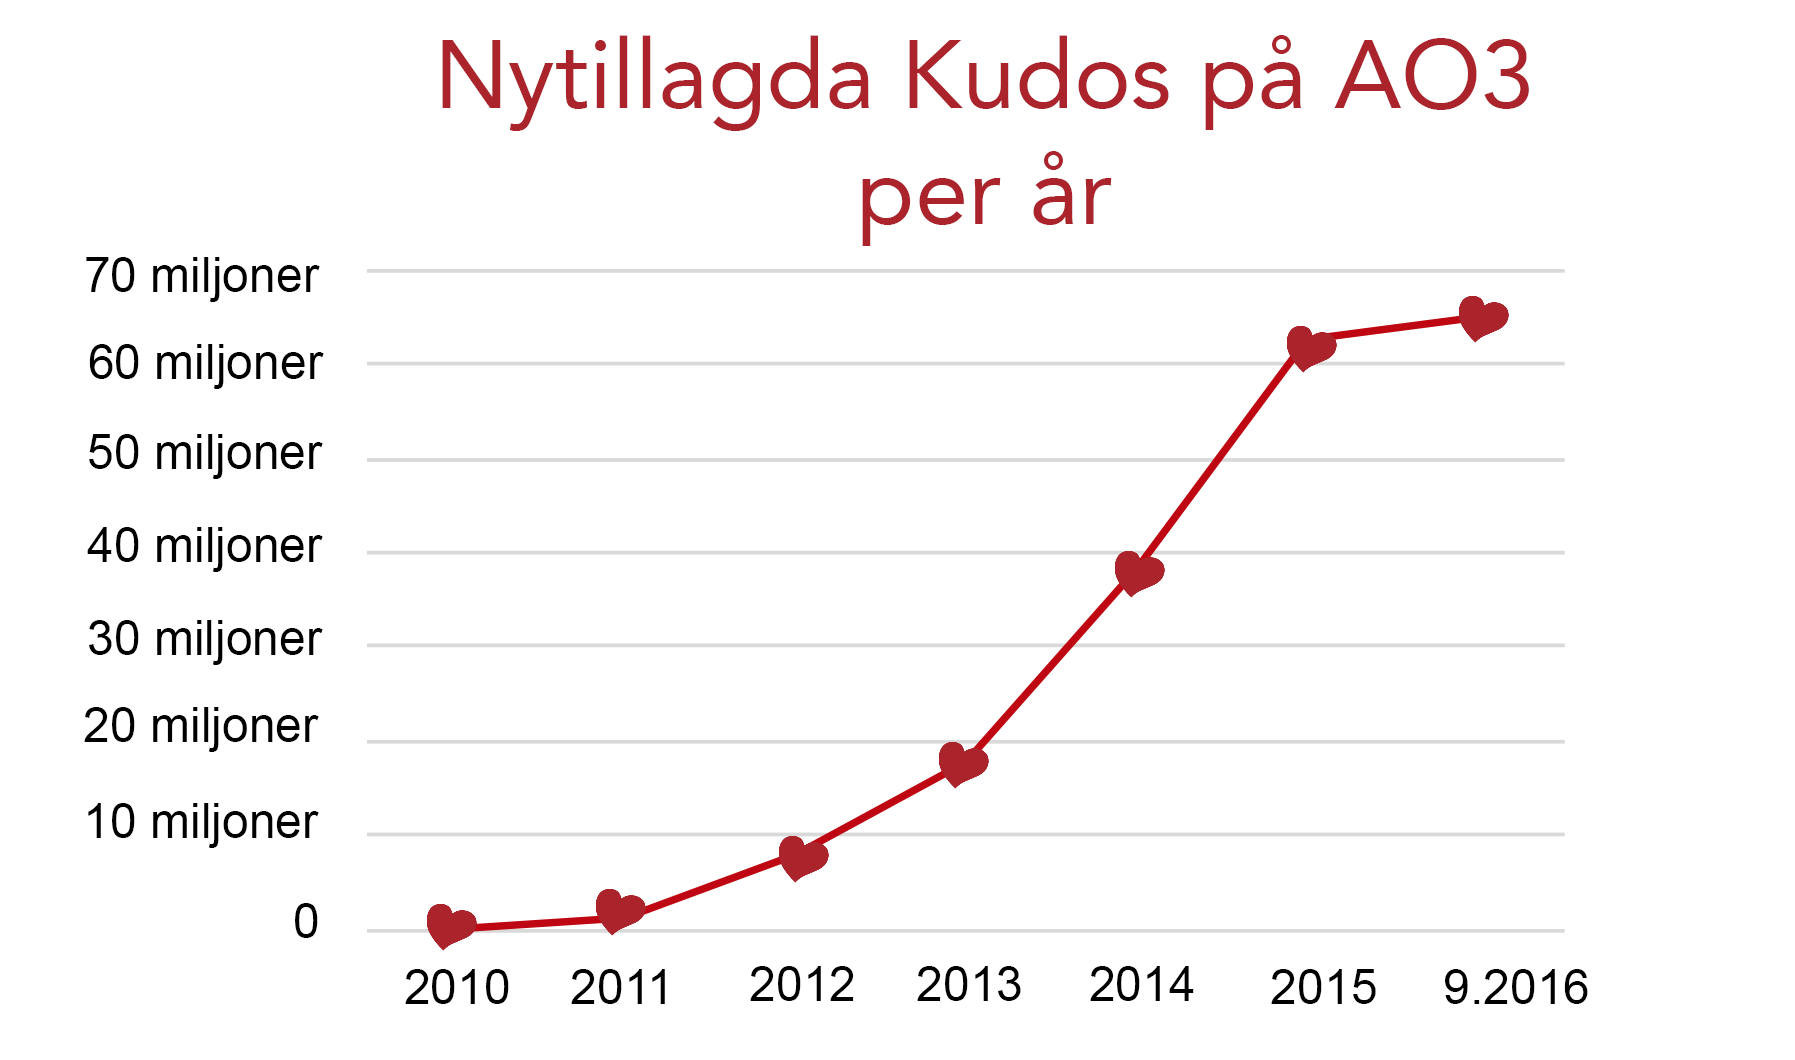 Tillväxtgraf för Kudos på AO3, från noll 2010 till över 60 miljoner nu i september 2016.